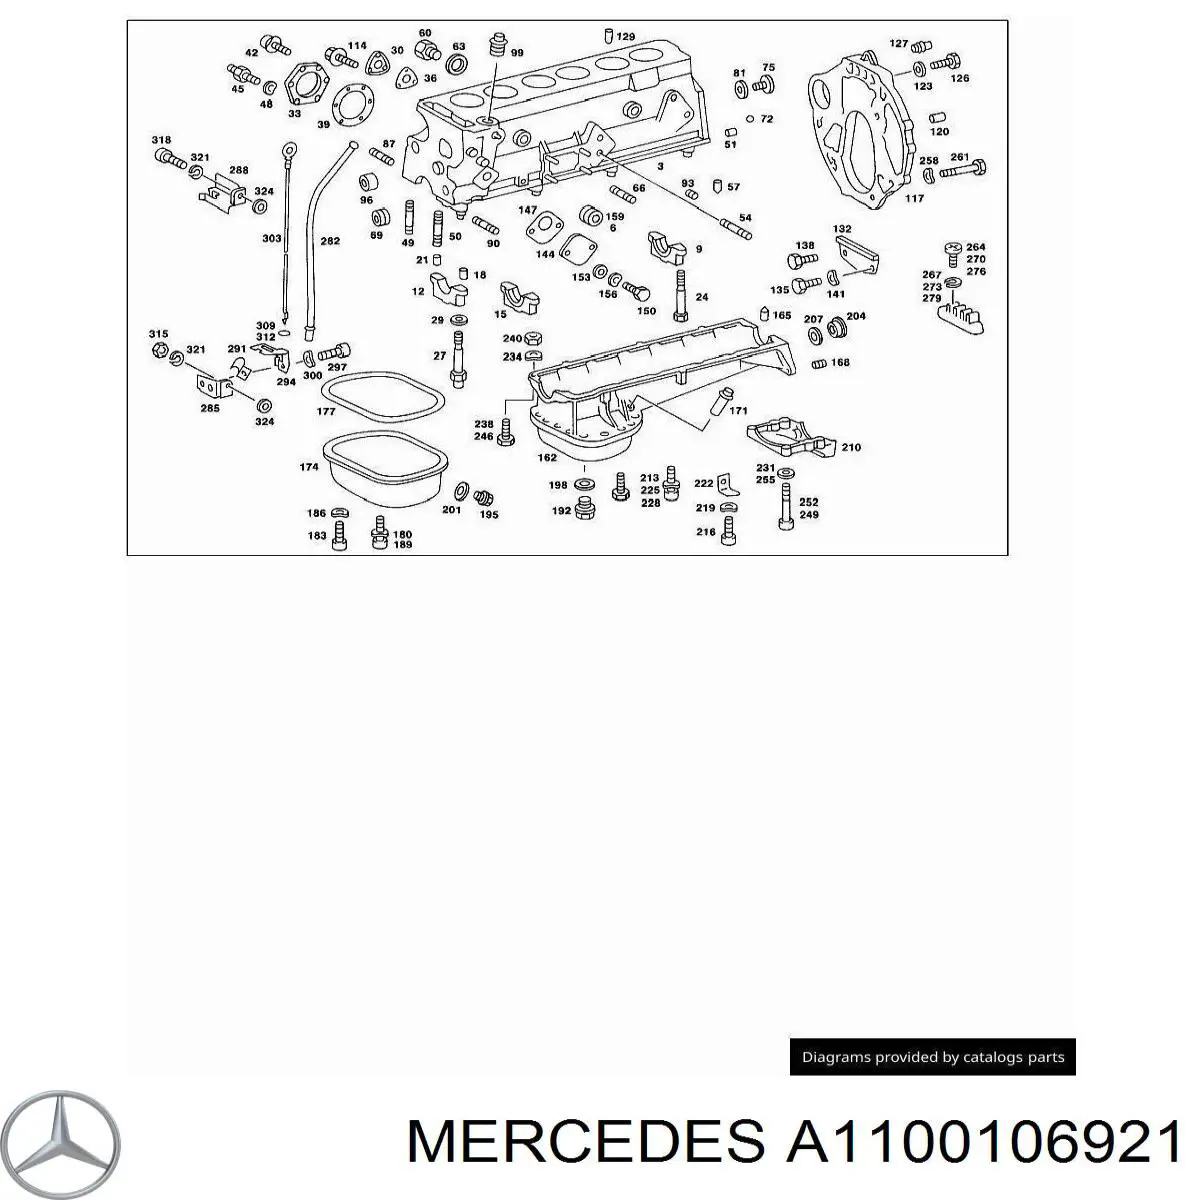 A1100106921 Mercedes комплект прокладок двигателя верхний